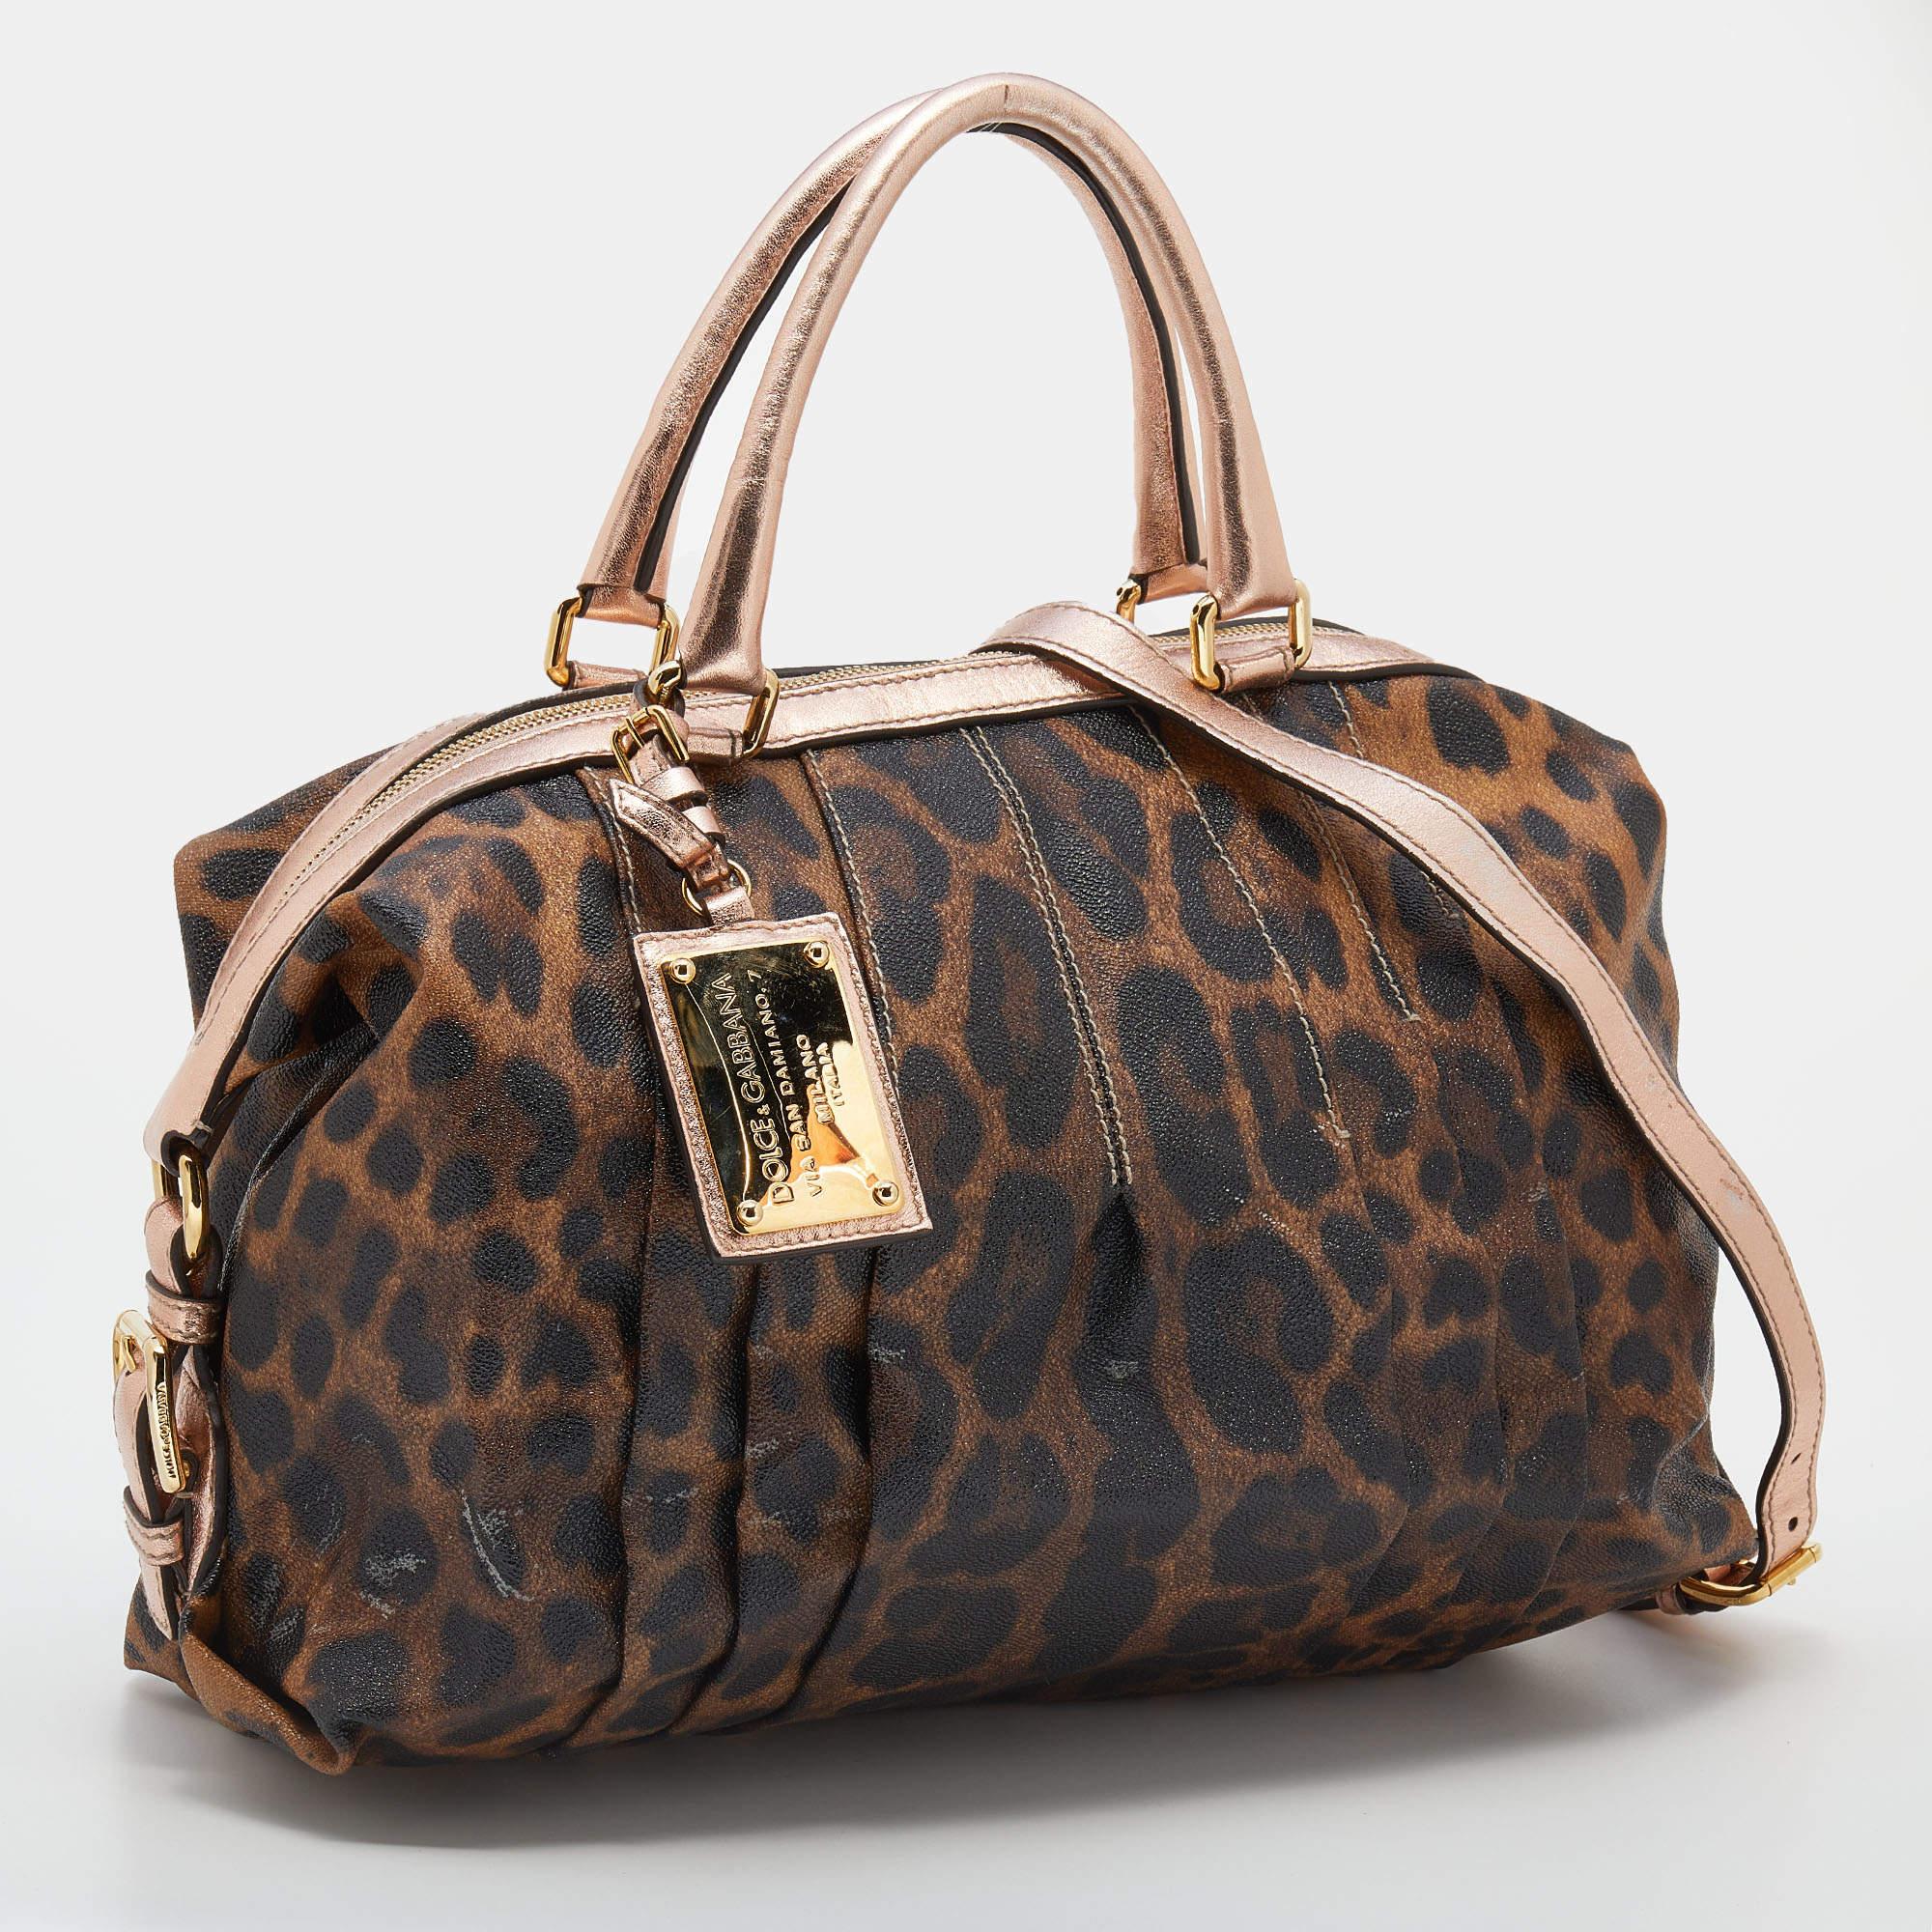 Cette sacoche de Dolce & Gabbana est à la fois élégante et fonctionnelle. Confectionné en toile et cuir imprimés léopard marron-rose, ce sac est doté de deux anses supérieures et de ferrures dorées. L'intérieur doublé de toile offre suffisamment